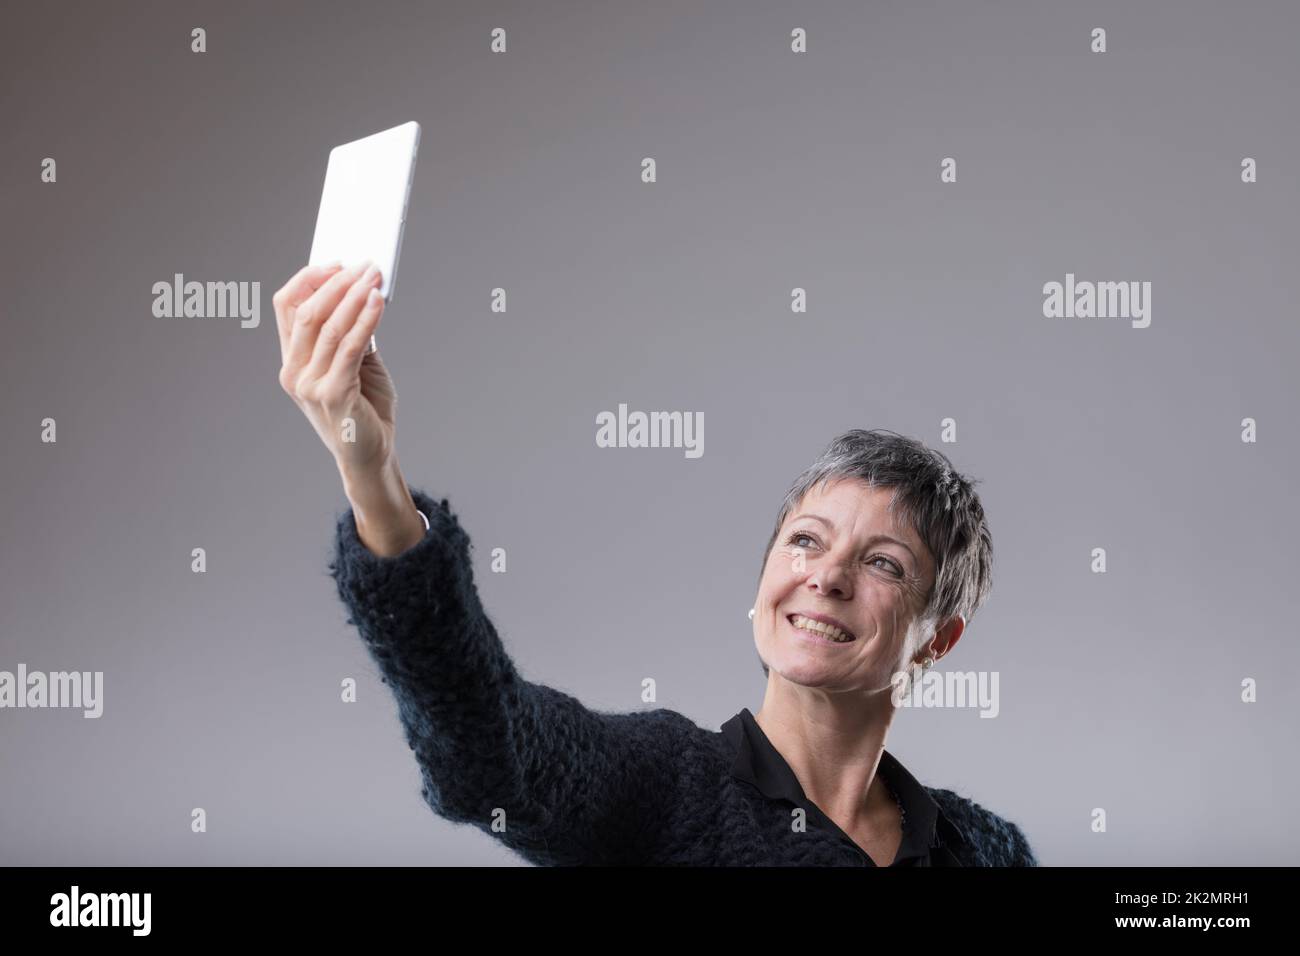 Attraktive Frau mittleren Alters, die ein Selfie macht Stockfoto